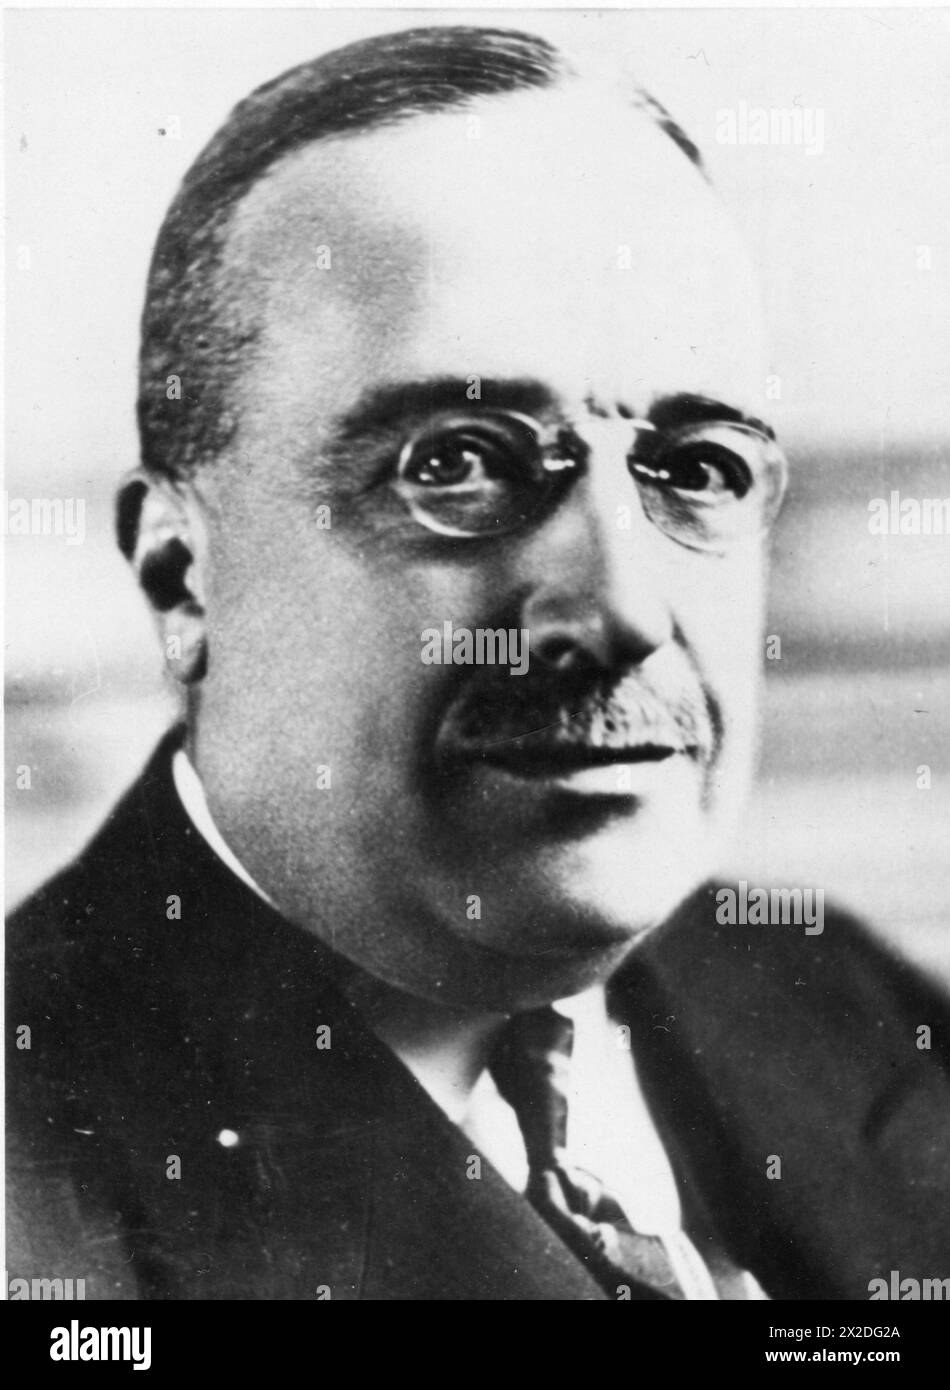 Tardieu, Andre, 22.9.1876 - 15.9,1945, homme politique français, premier ministre 2.11.1929 - 21.2,1930, SUPPLÉMENT-AUTORISATION-INFO-NON-DISPONIBLE Banque D'Images